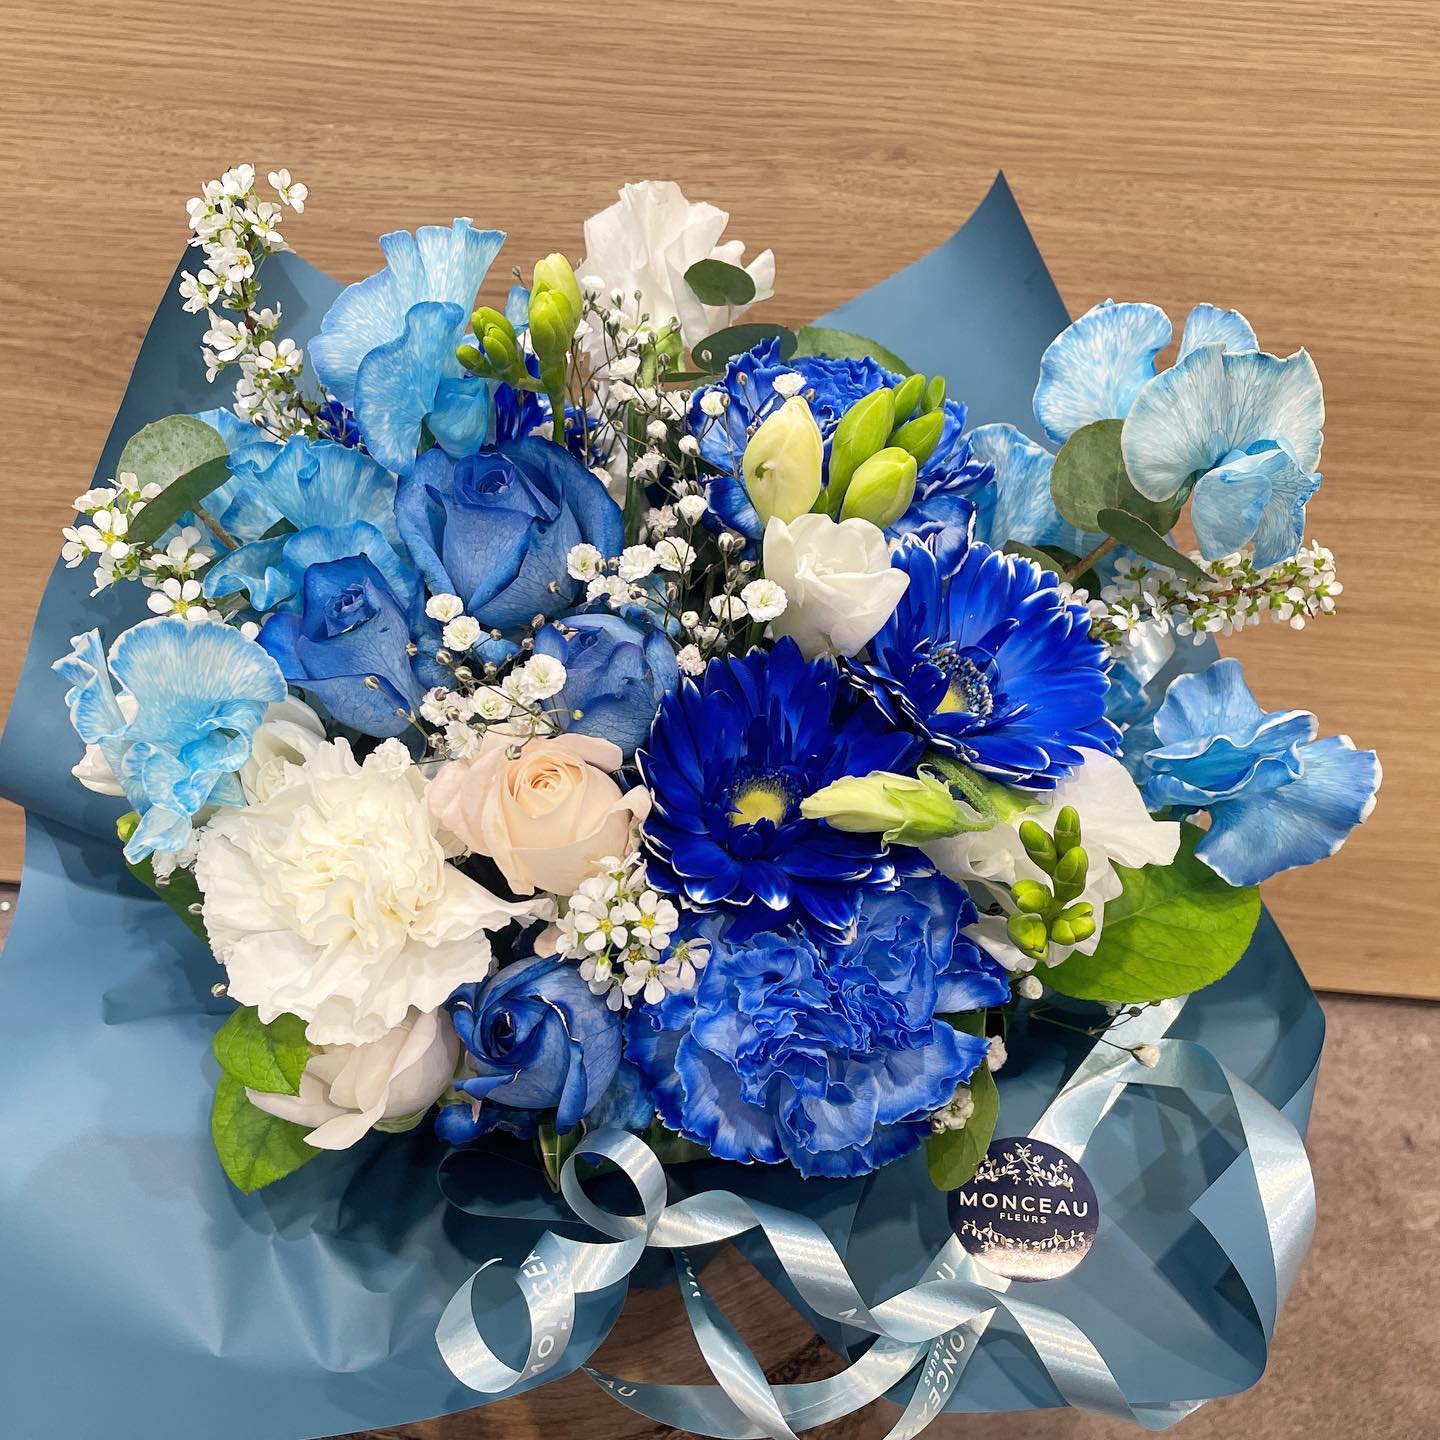 ブルーのお花を使ったアレンジメントや
花束もオーダーで承れます
.
ご相談ください